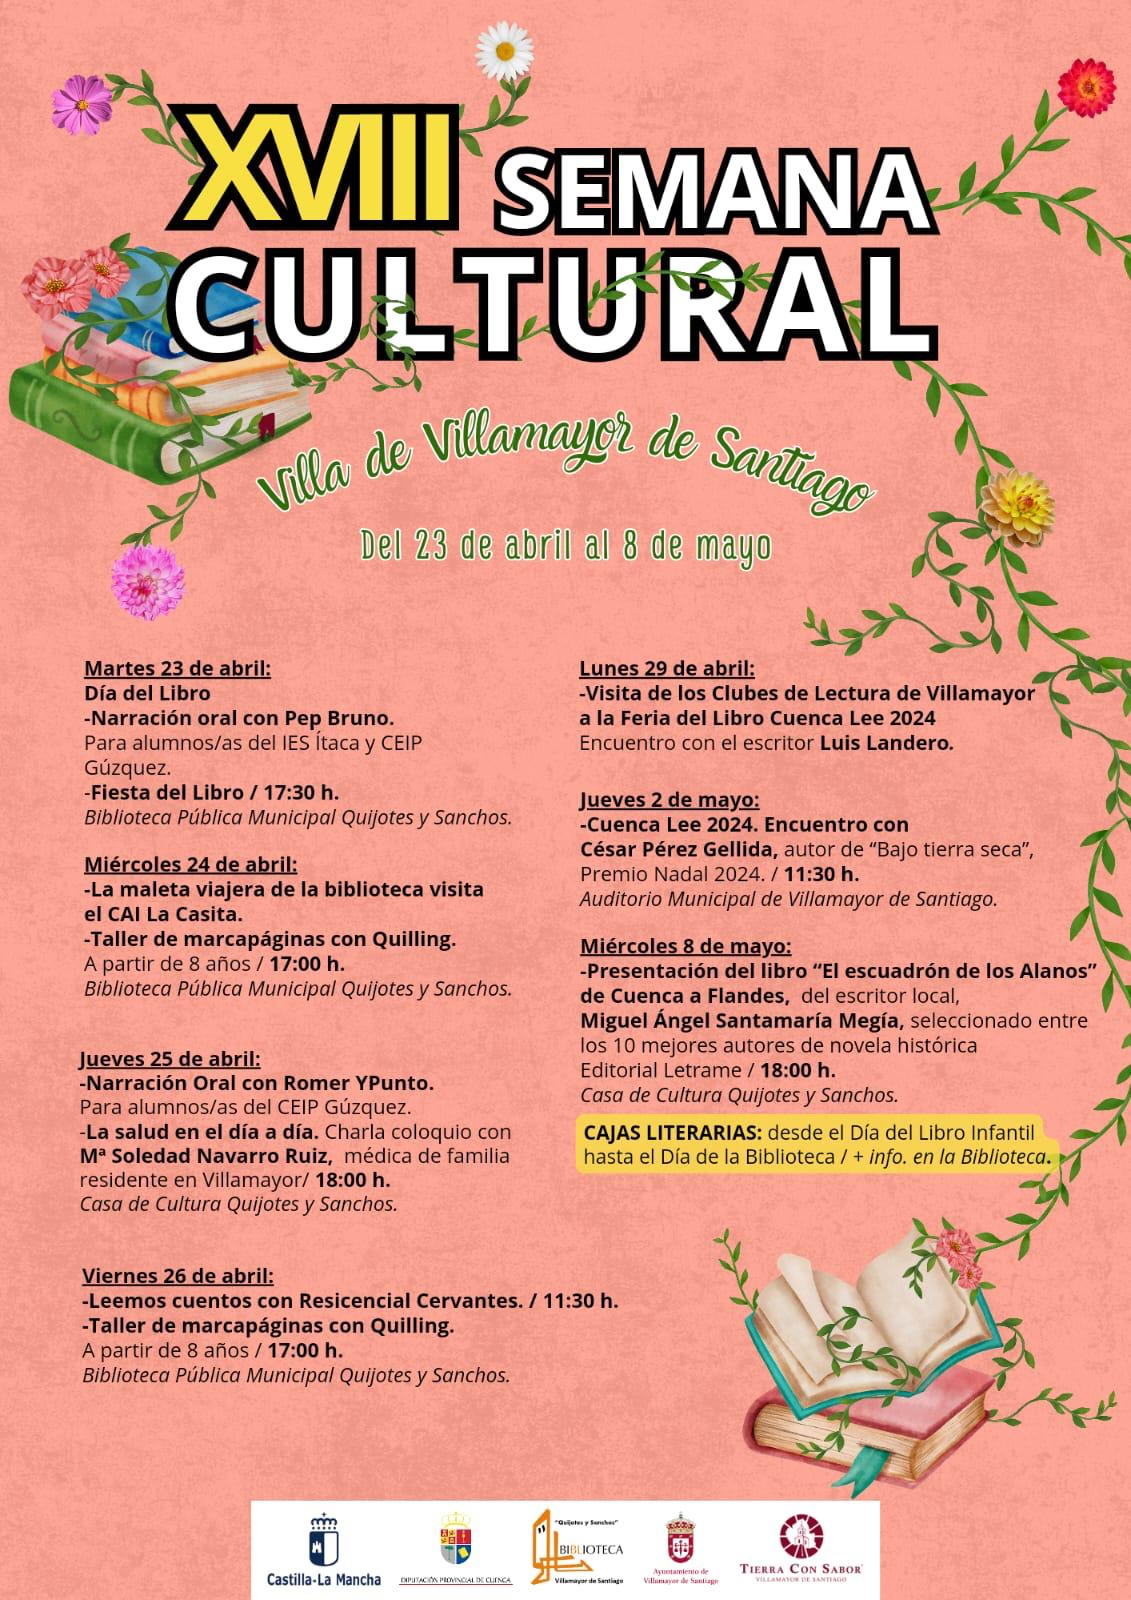 En este momento estás viendo XXVIII Semana Cultural Villa de Villamayor de Santiago